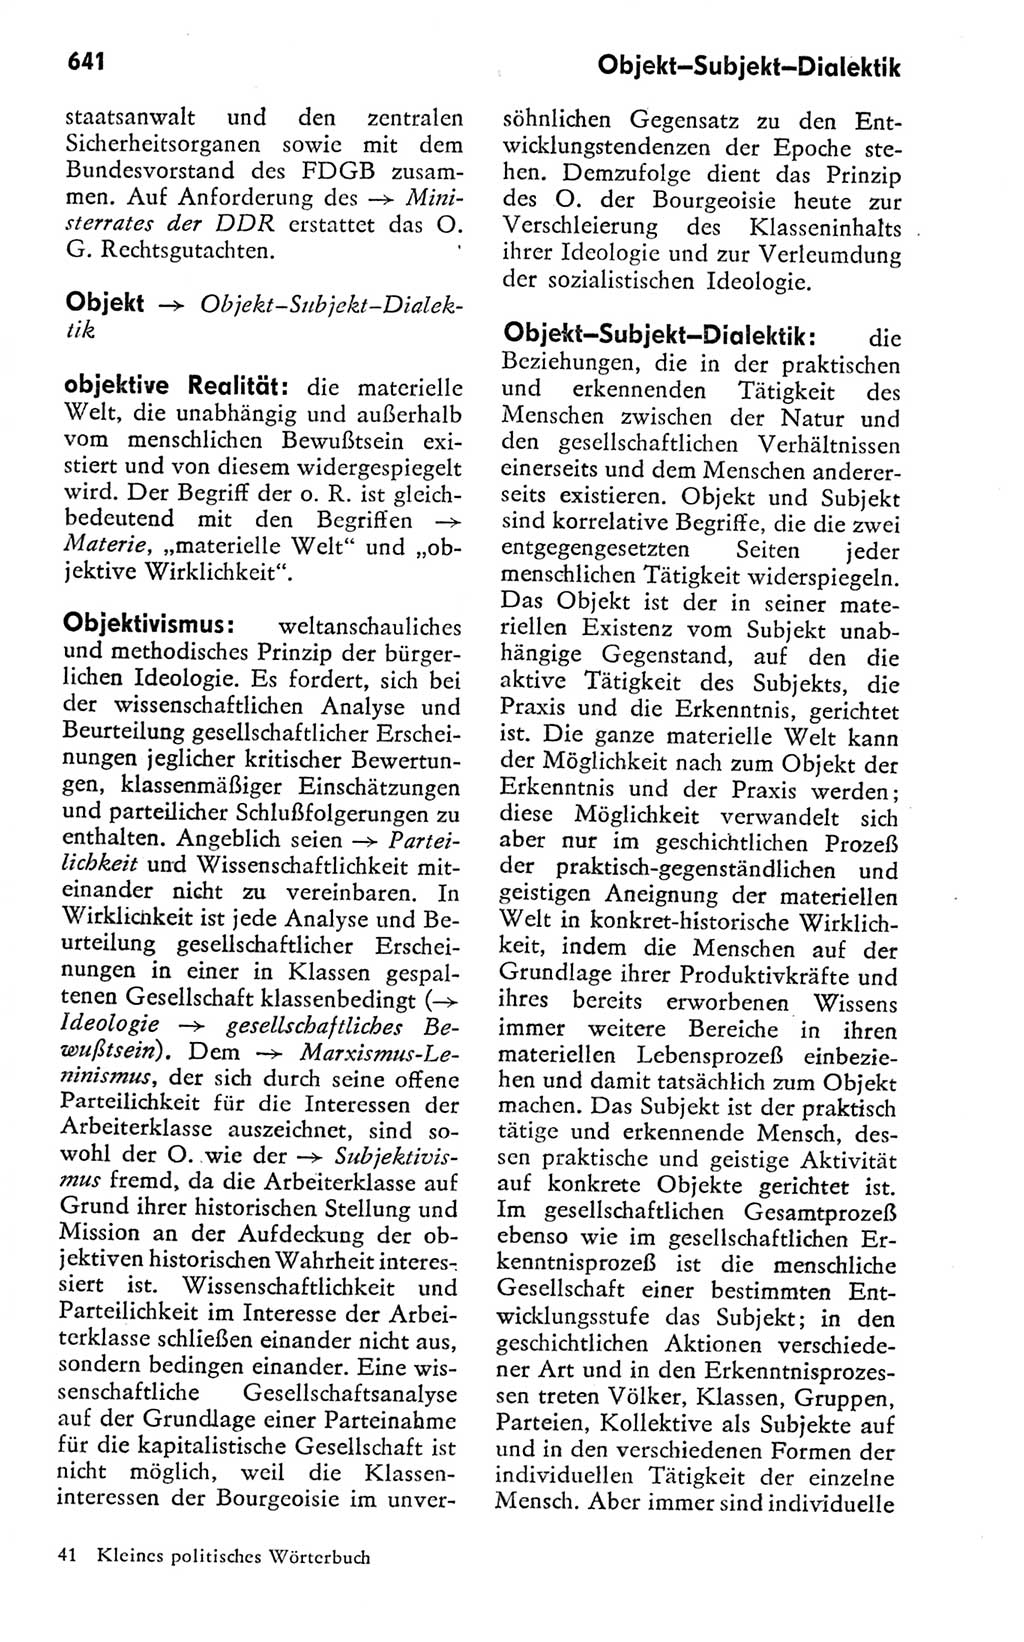 Kleines politisches Wörterbuch [Deutsche Demokratische Republik (DDR)] 1978, Seite 641 (Kl. pol. Wb. DDR 1978, S. 641)